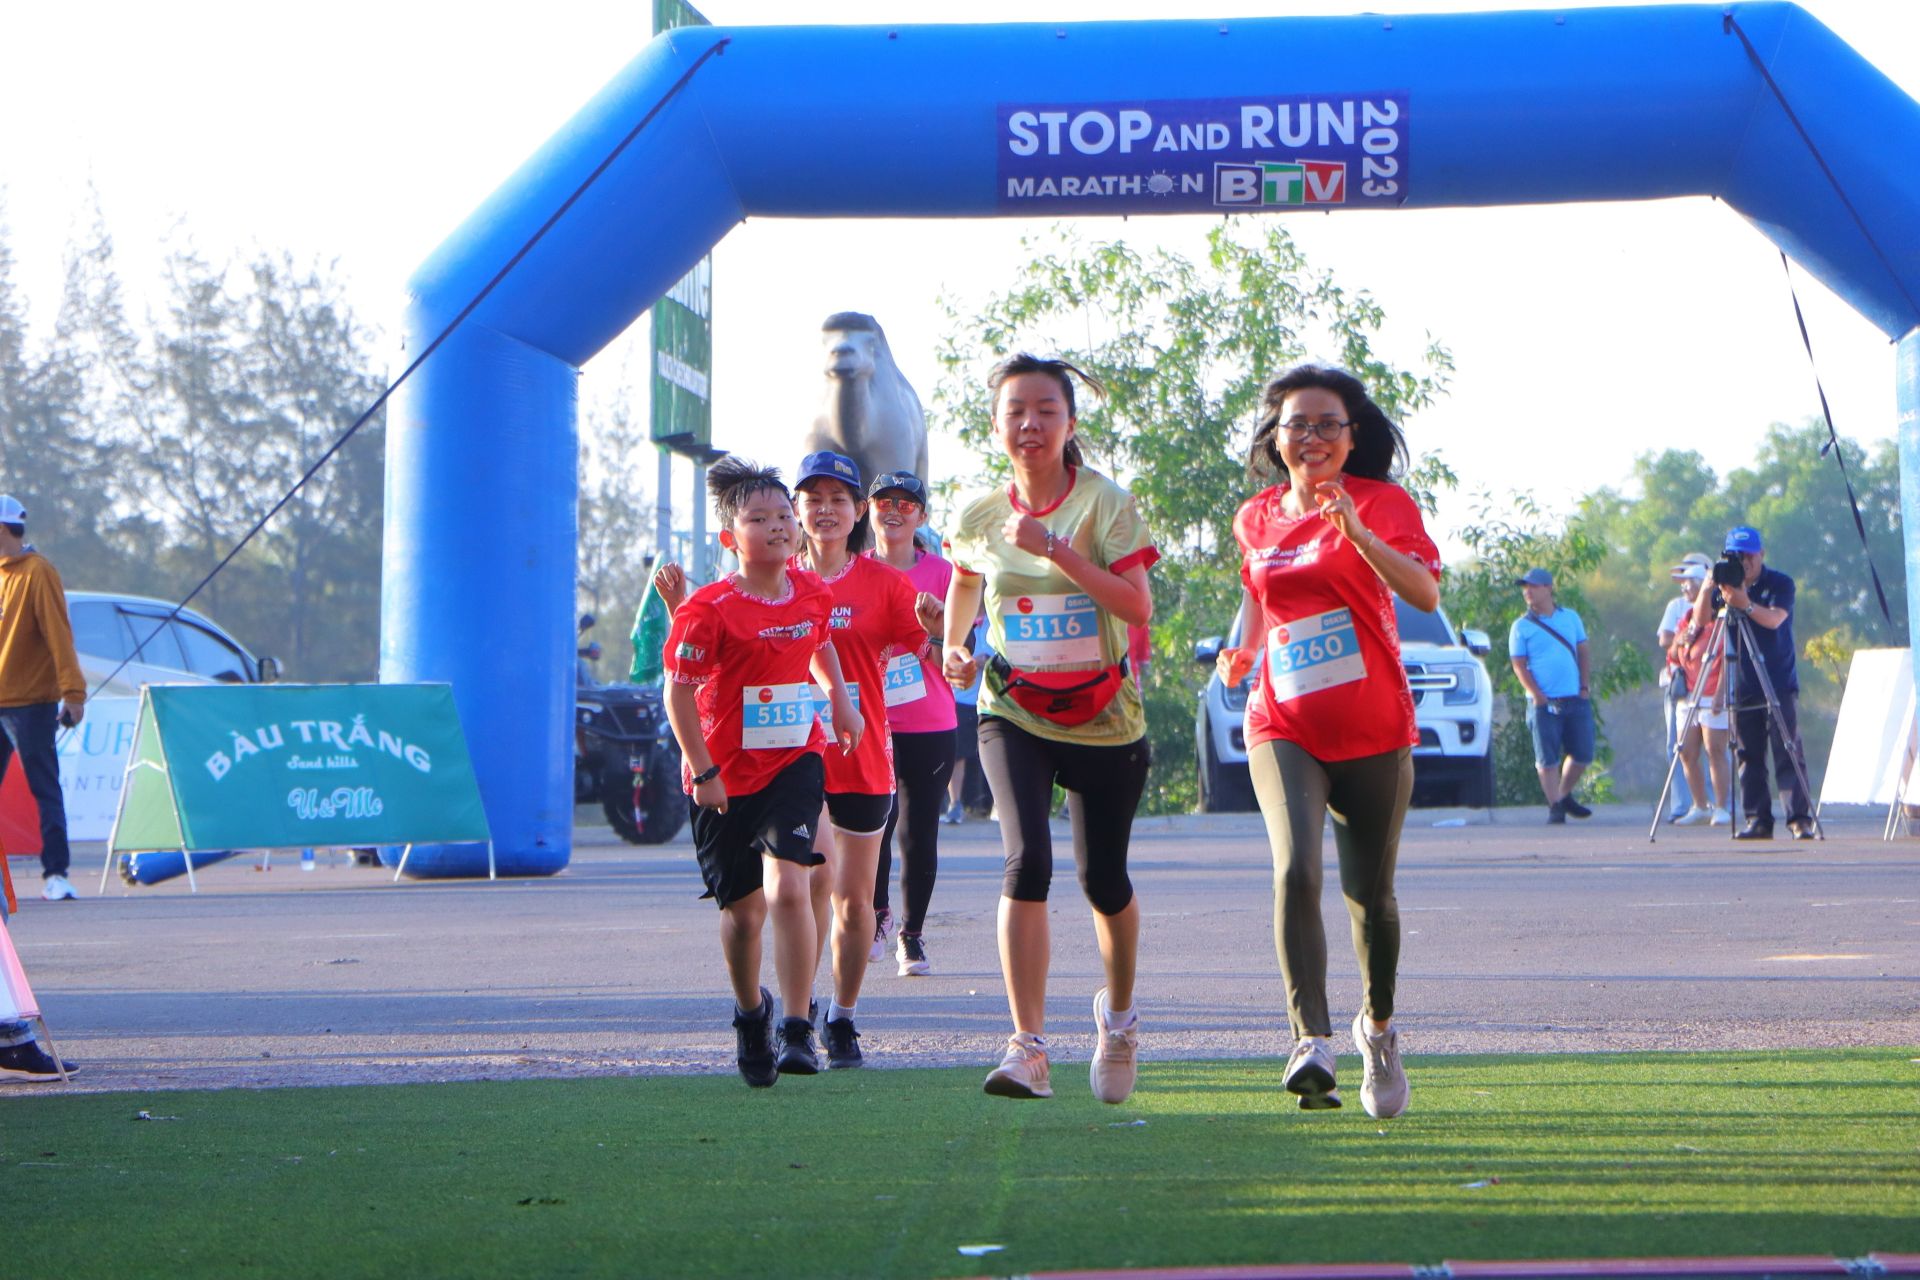 giải chạy Stop And Run Marathon BTV Bình Thuận hướng đến chào mừng 48 năm ngày giải phóng Bình Thuận (19/4/1975 – 19/4/2023)